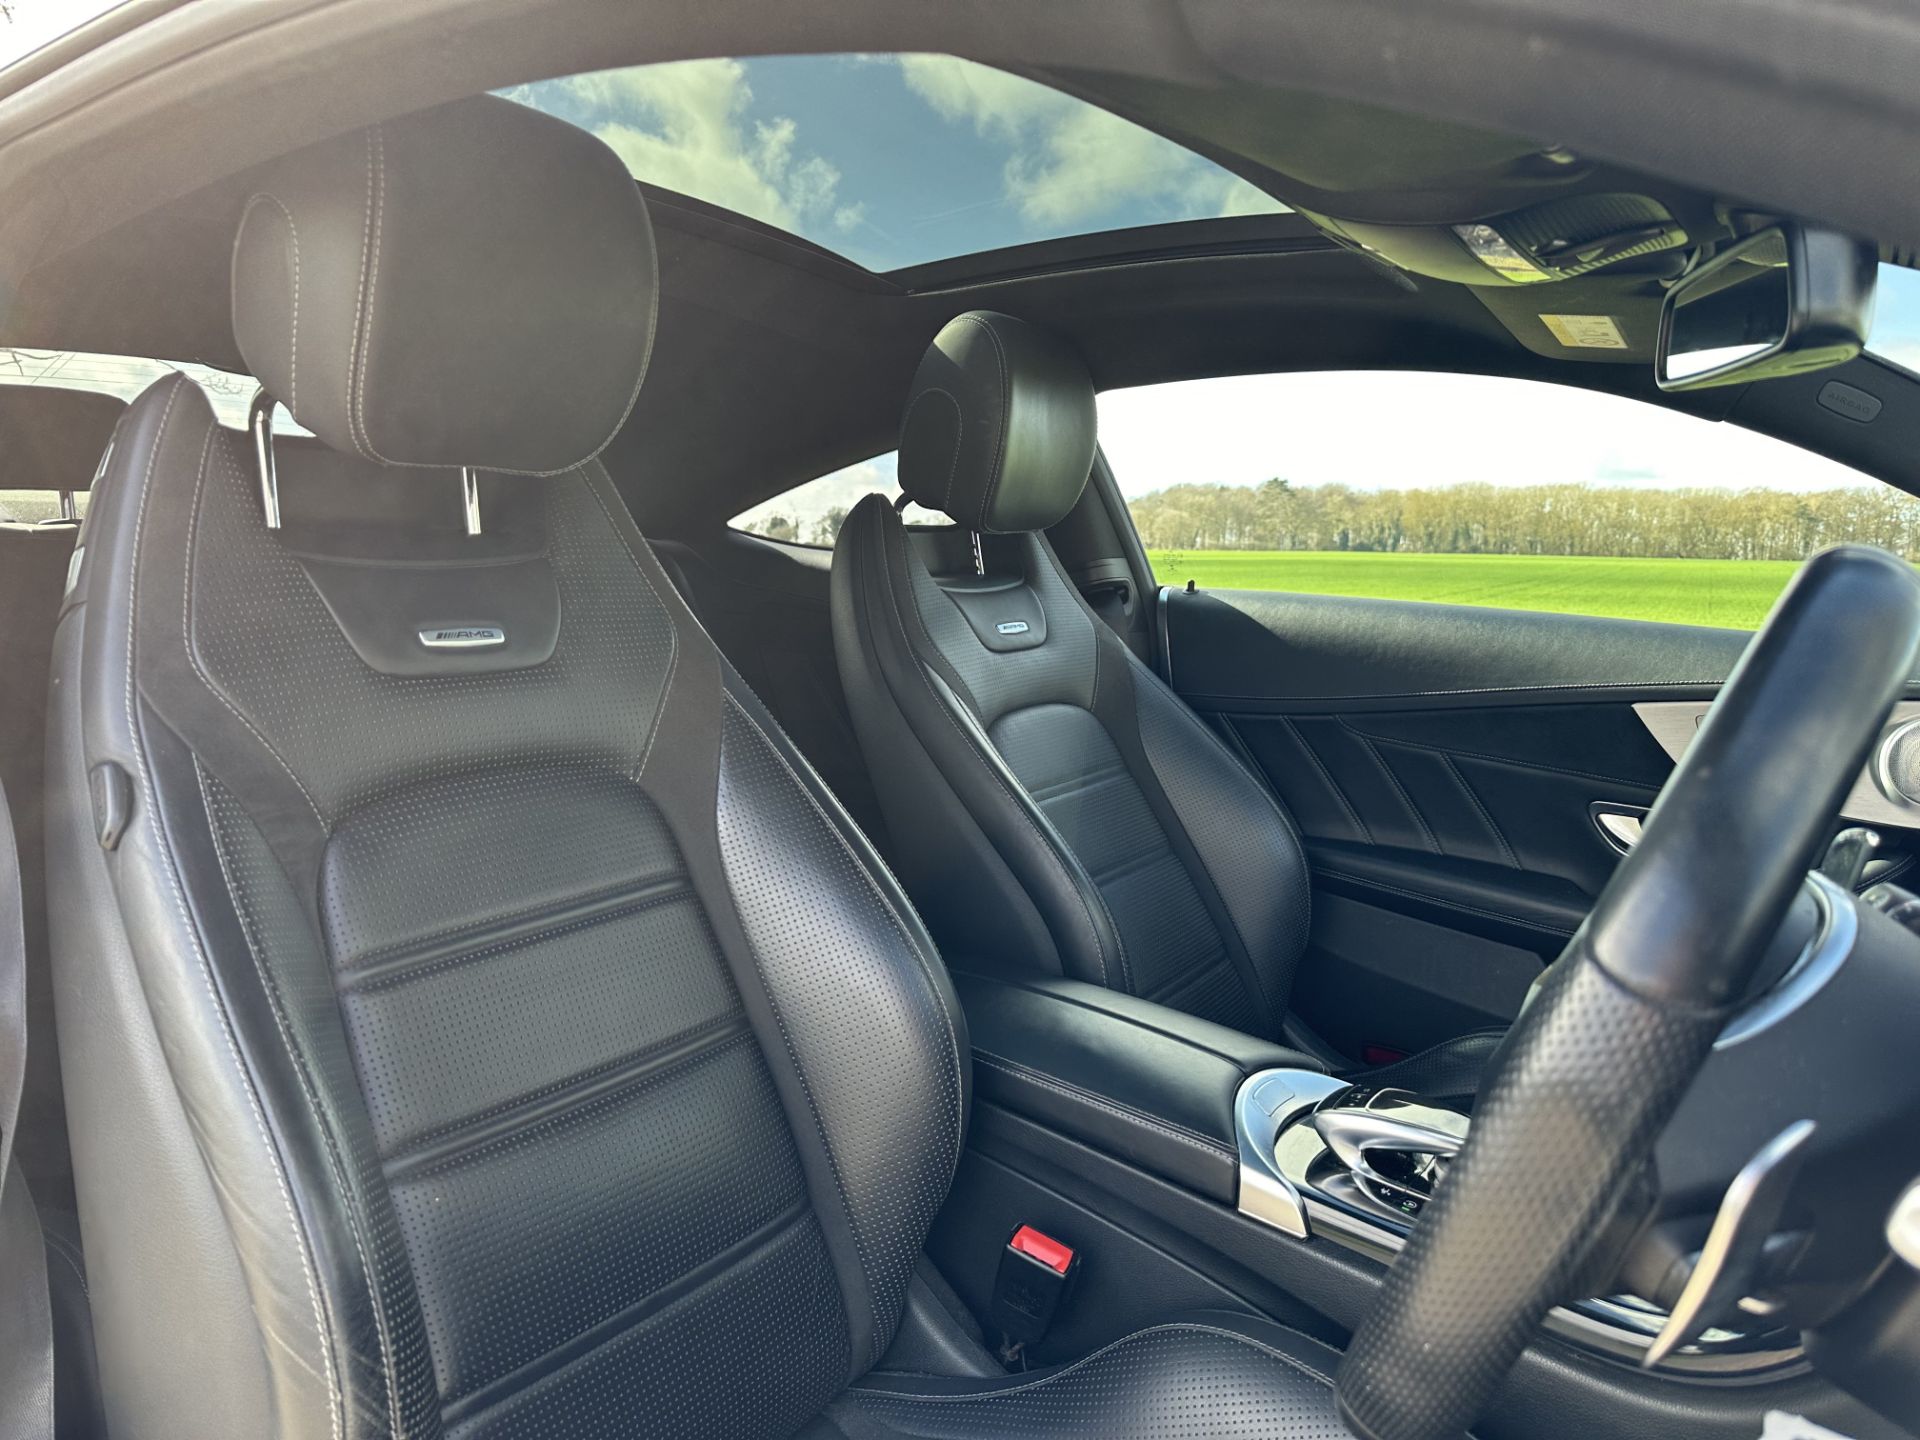 MERCEDES-BENZ C CLASS C63 Premium 2dr Coupe "Auto " (2019 Model) Automatic - 59K miles - SH PRINT - Image 16 of 21